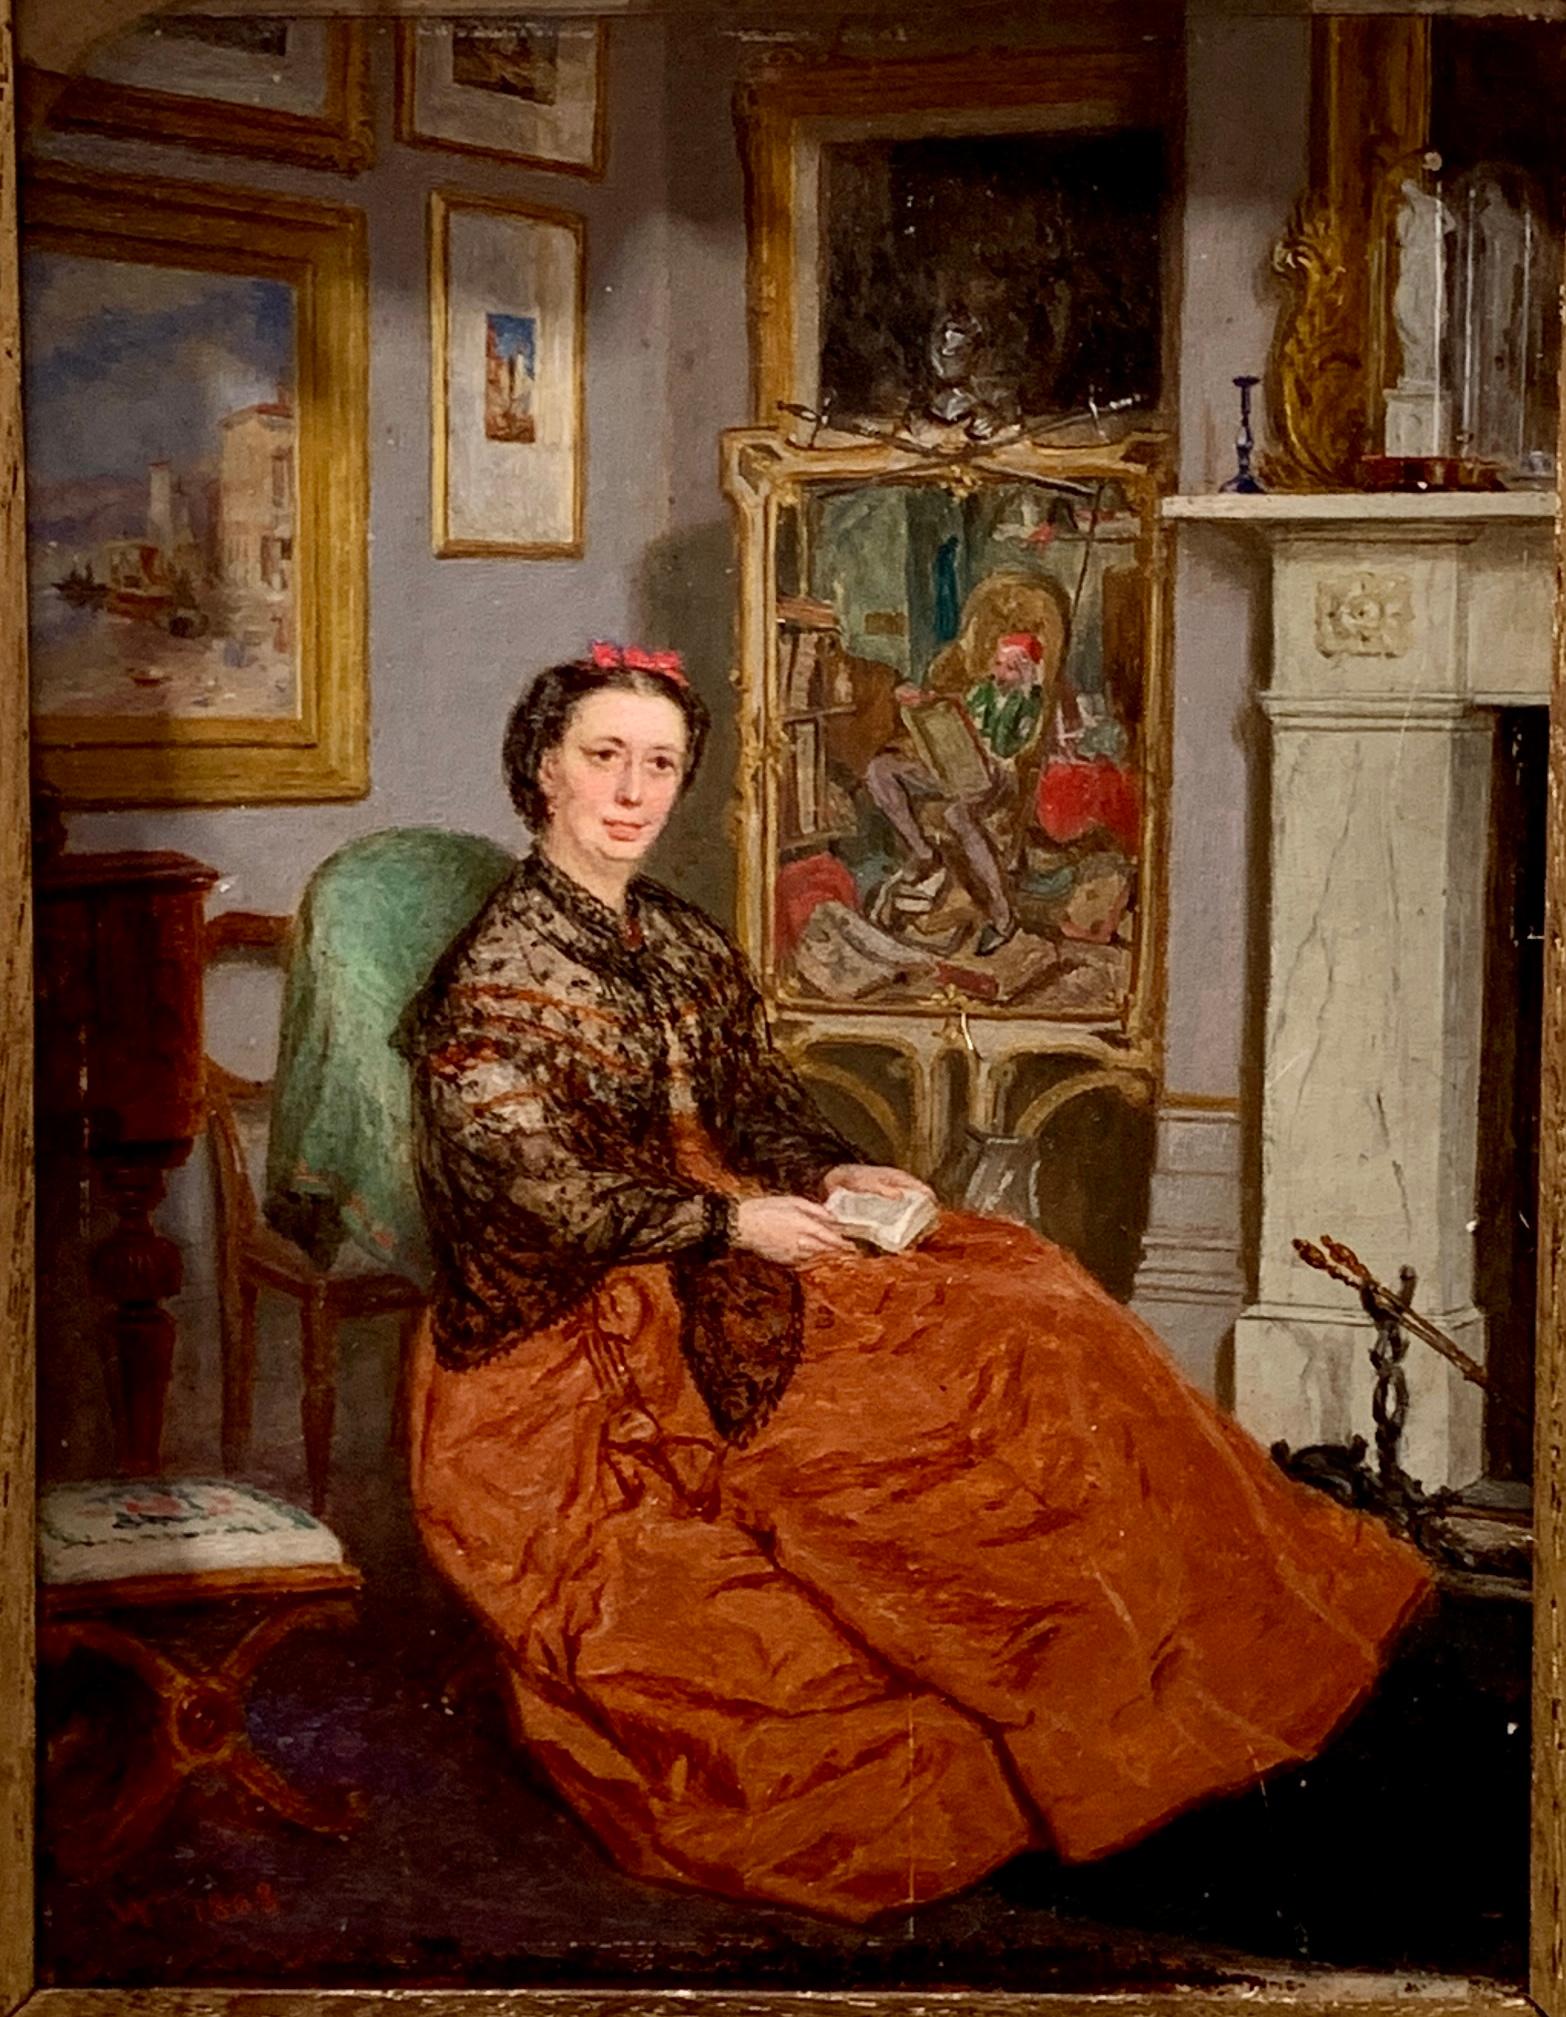 Englisch 19. Jahrhundert viktorianischen antiken Porträt einer sitzenden Dame in ihrem Inneren – Painting von John Watson Chapman